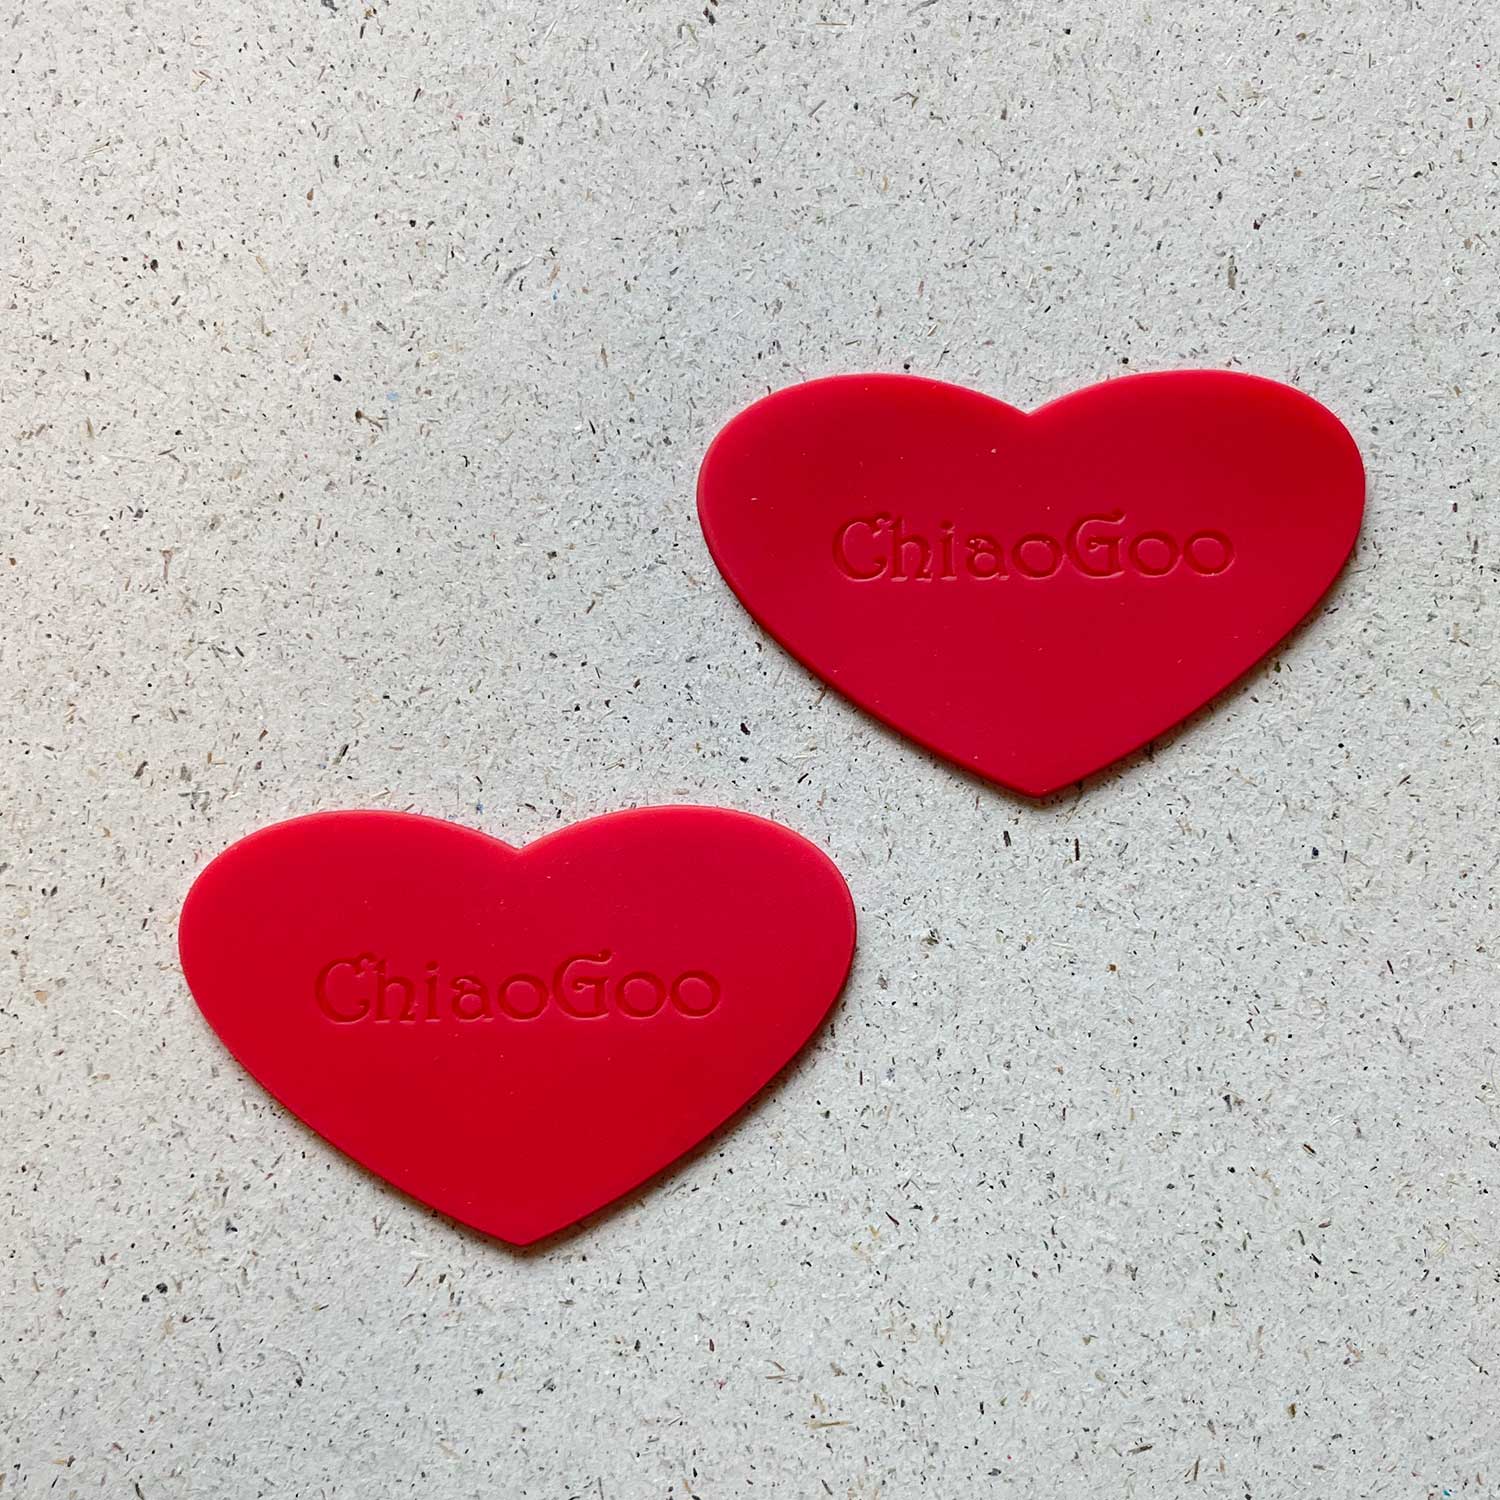 ChiaoGoo Rubber Grippers son corazones de goma roja que se utilizan para apretar las puntas de las agujas